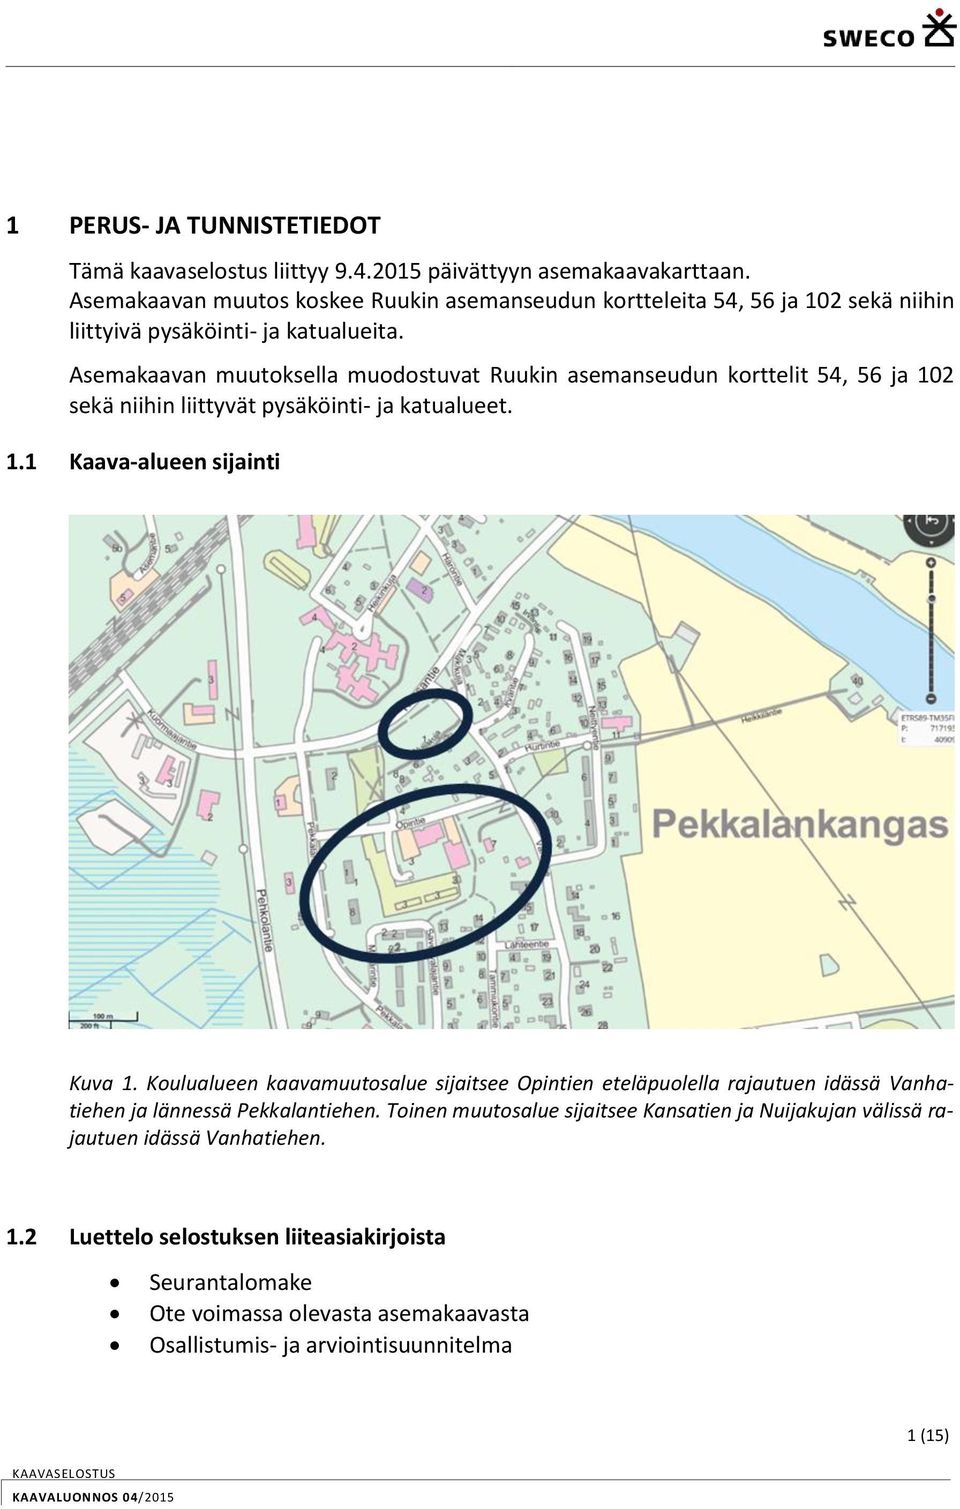 Asemakaavan muutoksella muodostuvat Ruukin asemanseudun korttelit 54, 56 ja 102 sekä niihin liittyvät pysäköinti- ja katualueet. 1.1 Kaava-alueen sijainti Kuva 1.